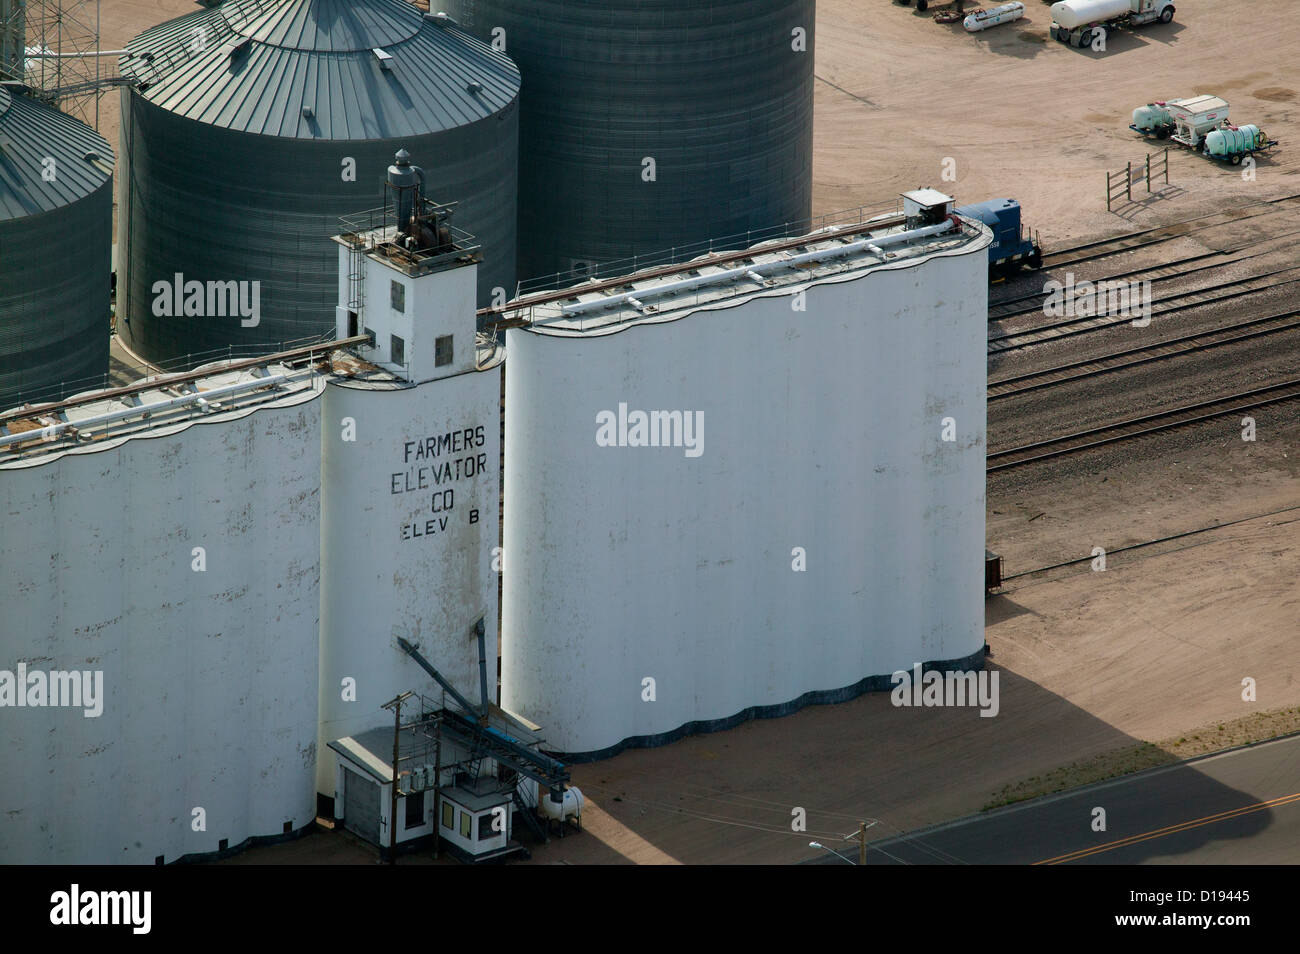 Photographie aérienne des élévateurs à grain Farmers Elevator Company Chappell Nebraska Banque D'Images